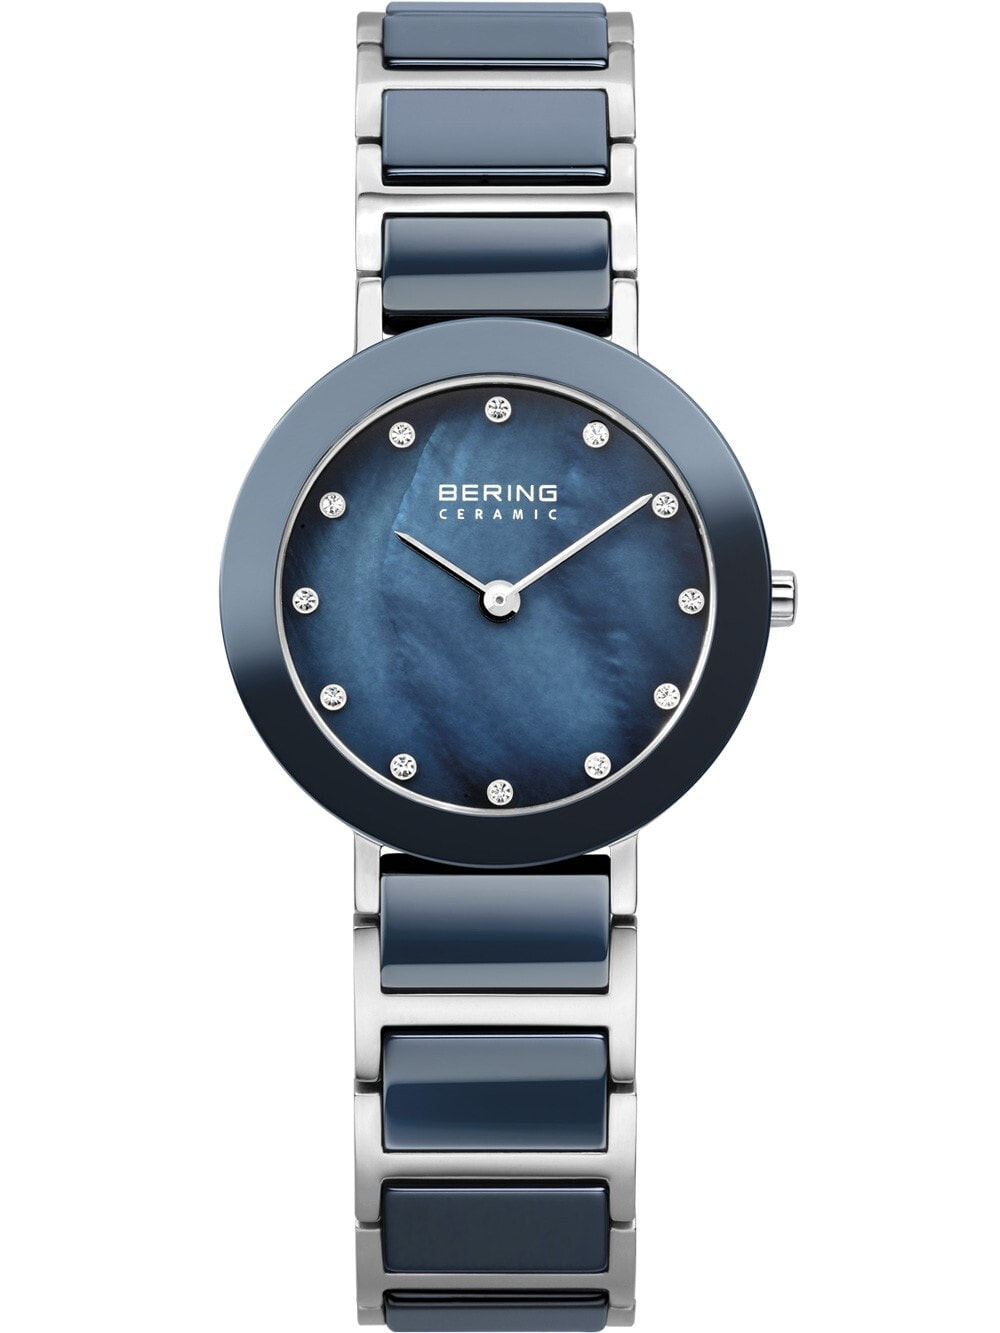 Женские наручные кварцевые часы Bering циферблат перламутровый синий украшен кристаллами Swarovski, сталь с керамическими вставками.